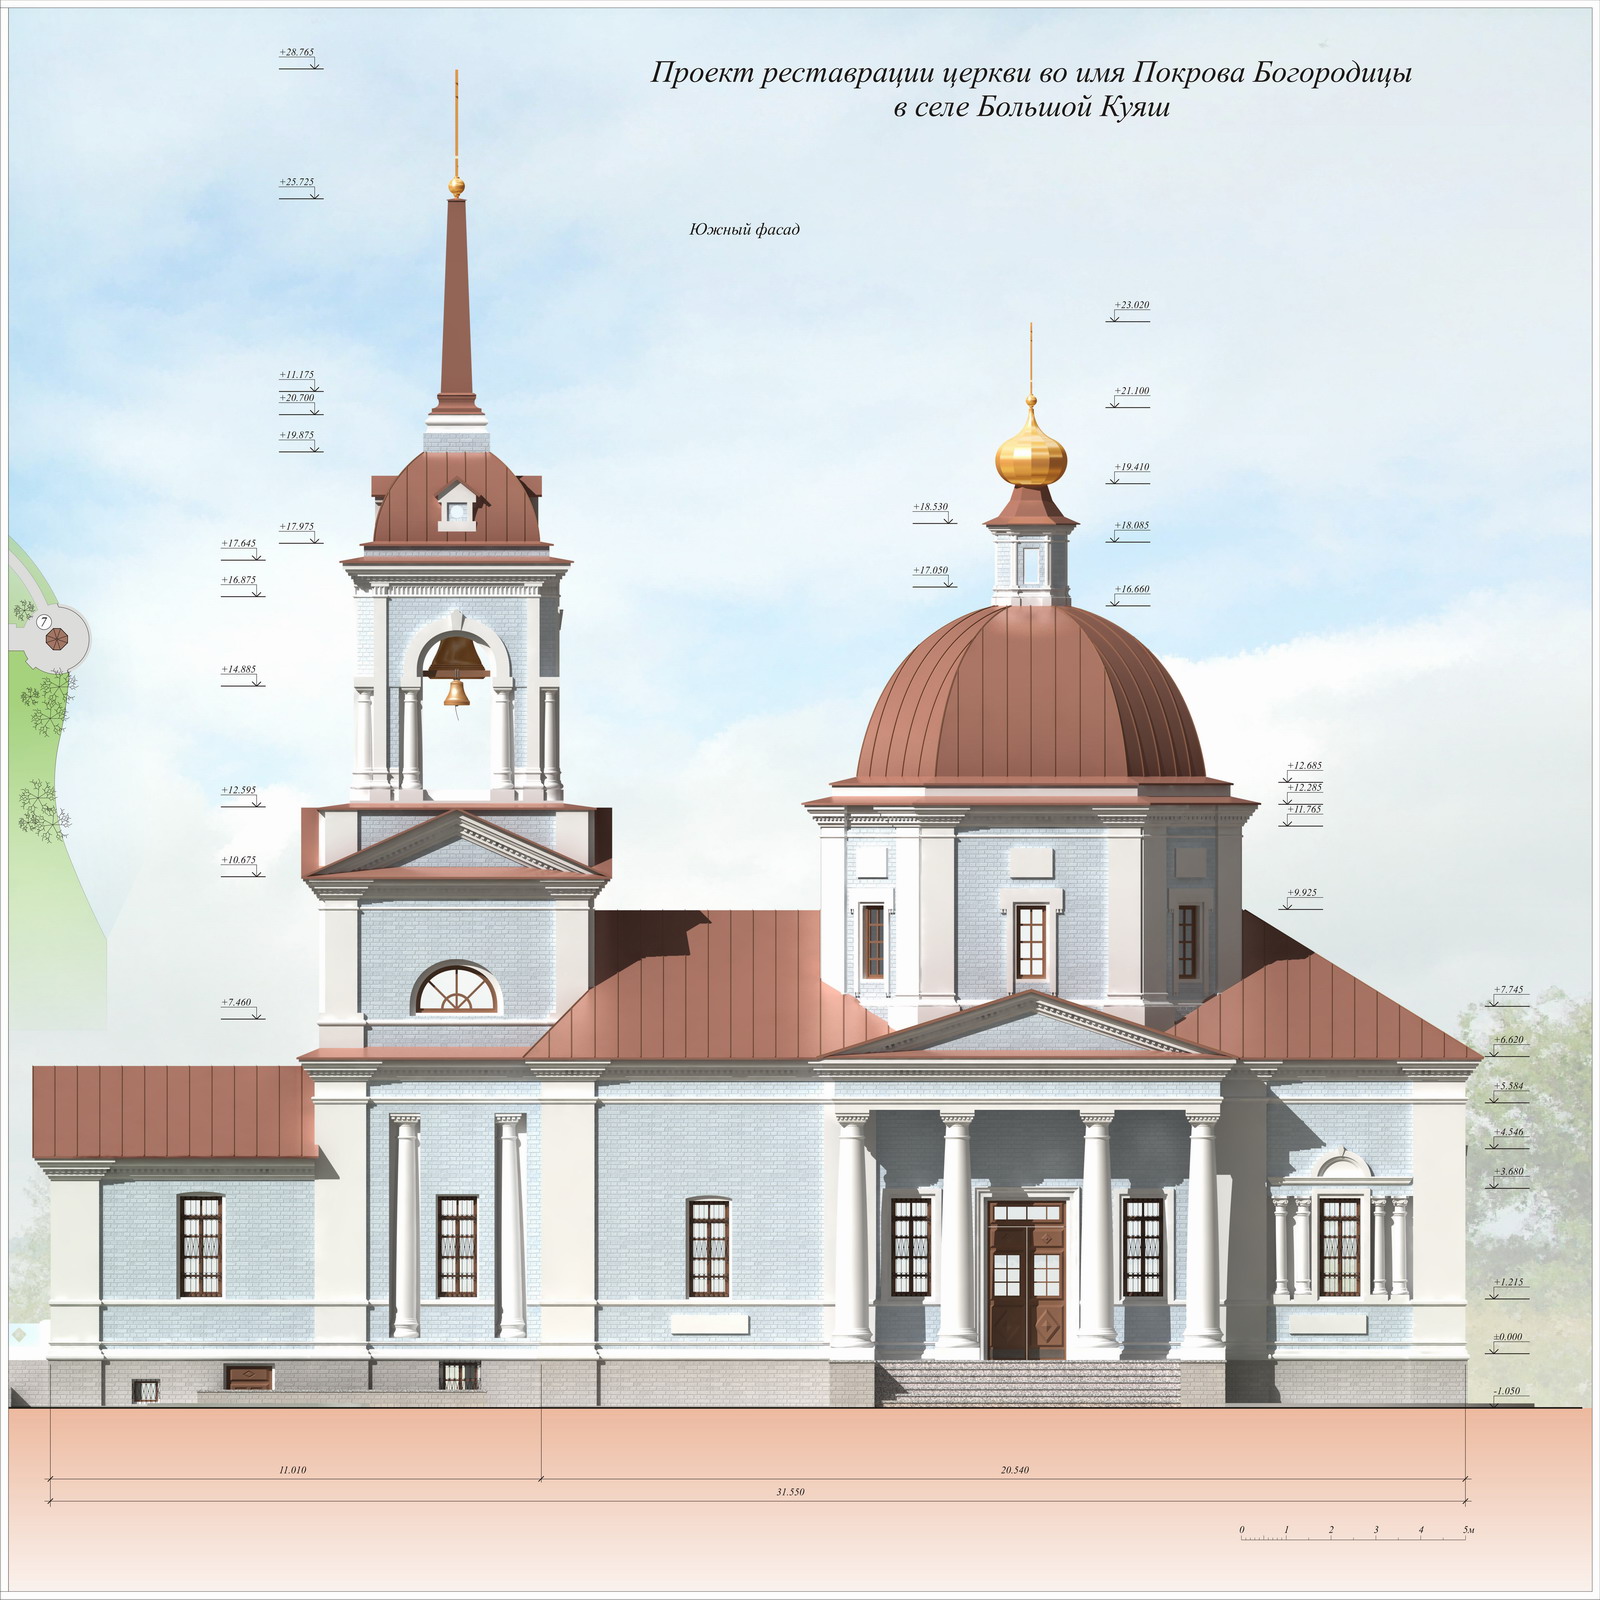 Проект реставрации церкви Покрова Богородицы